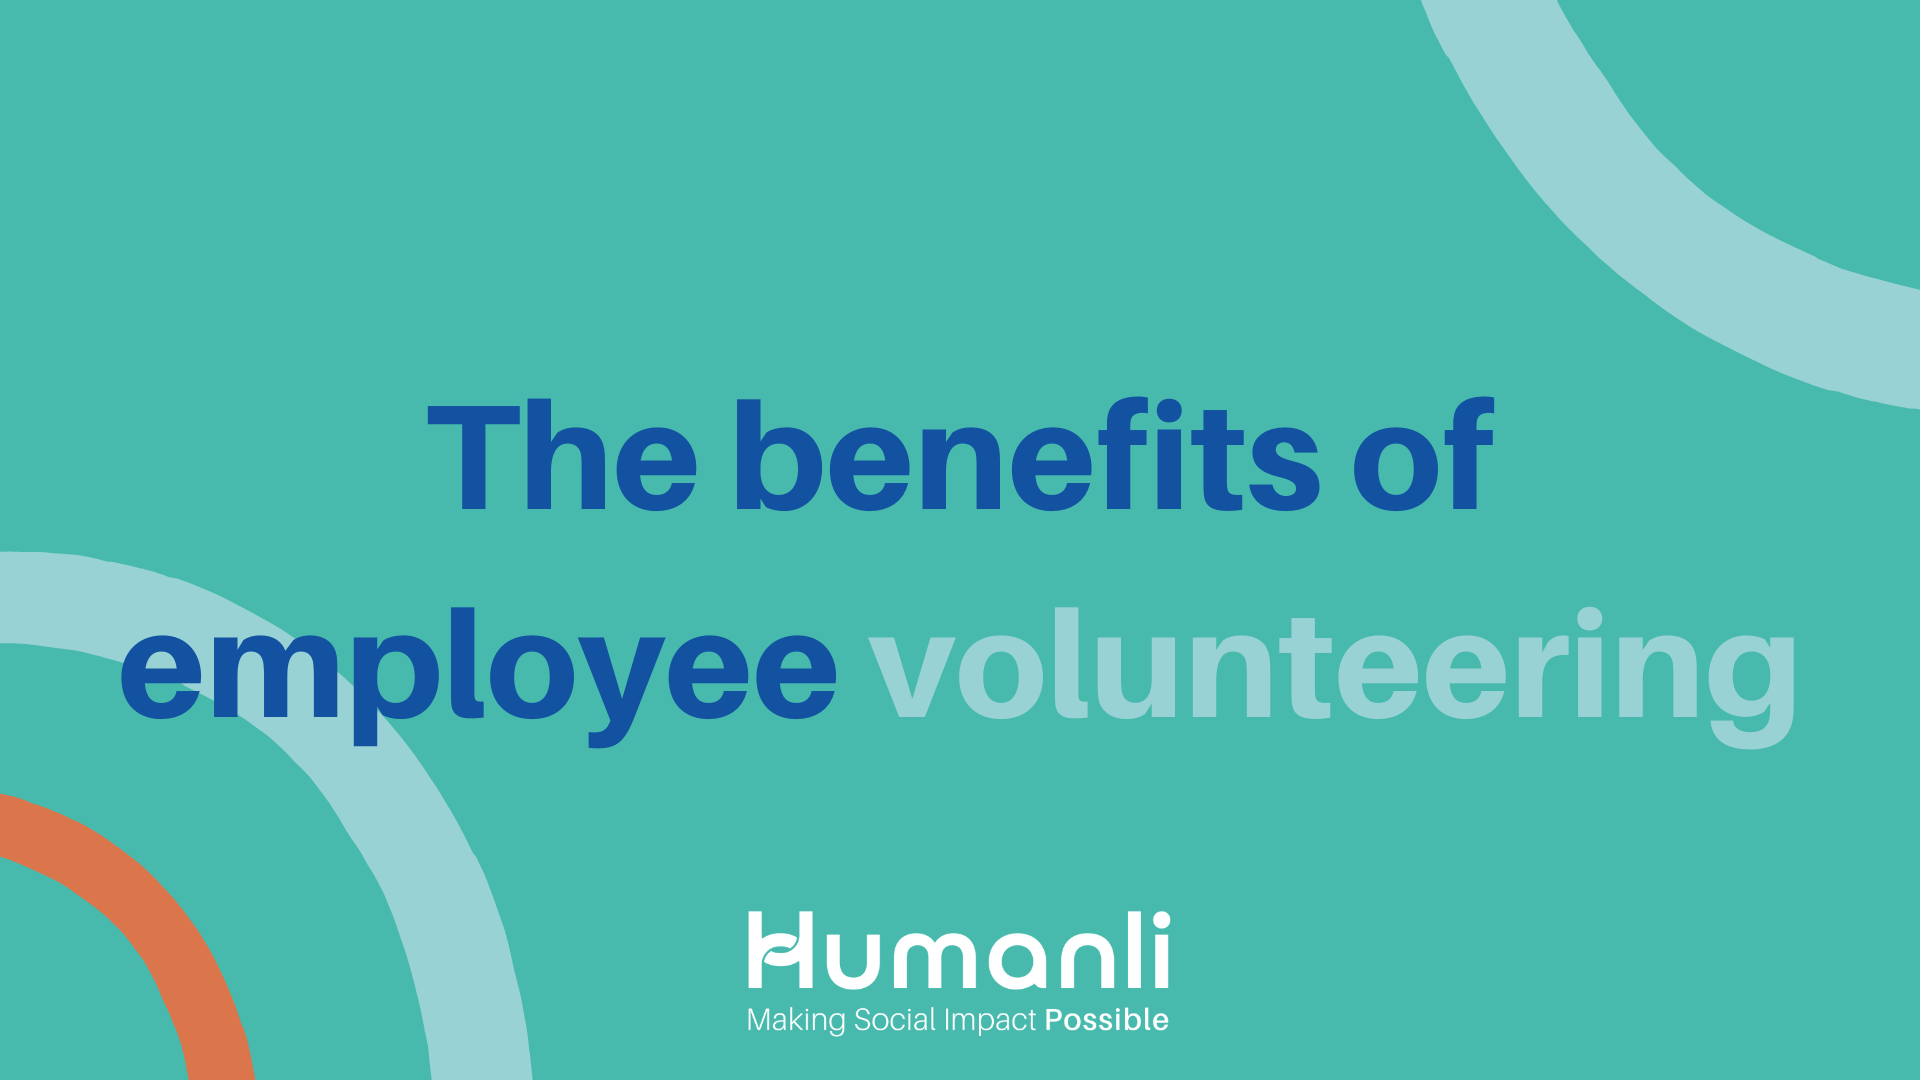 The benefits of employee volunteering